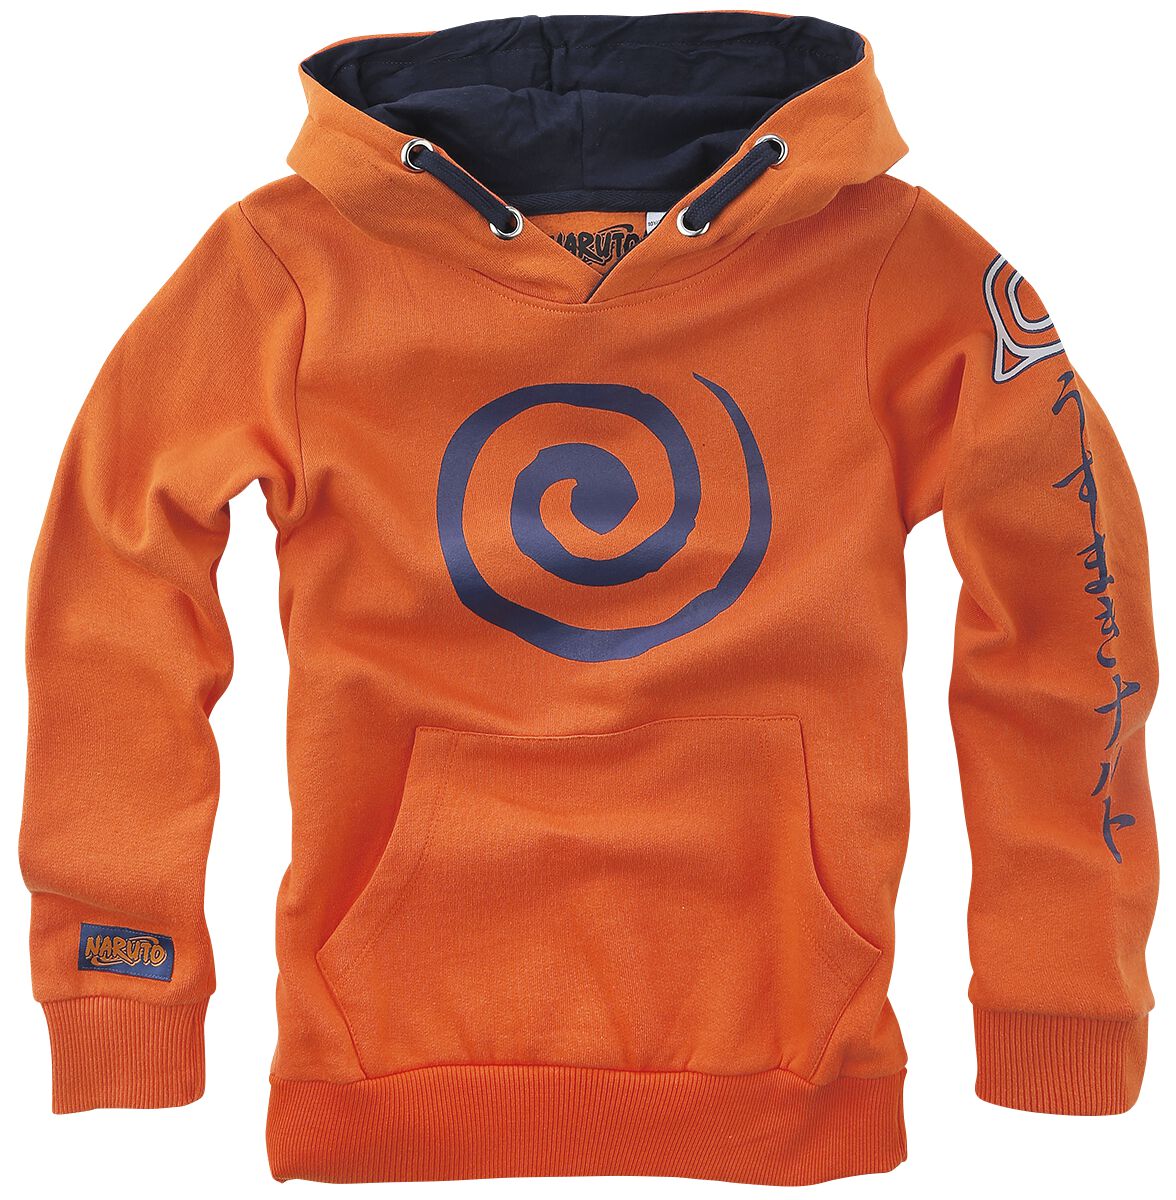 Naruto - Anime Kapuzenpullover - Kids - Sign - 116 bis 164 - Größe 116 - orange  - EMP exklusives Merchandise!